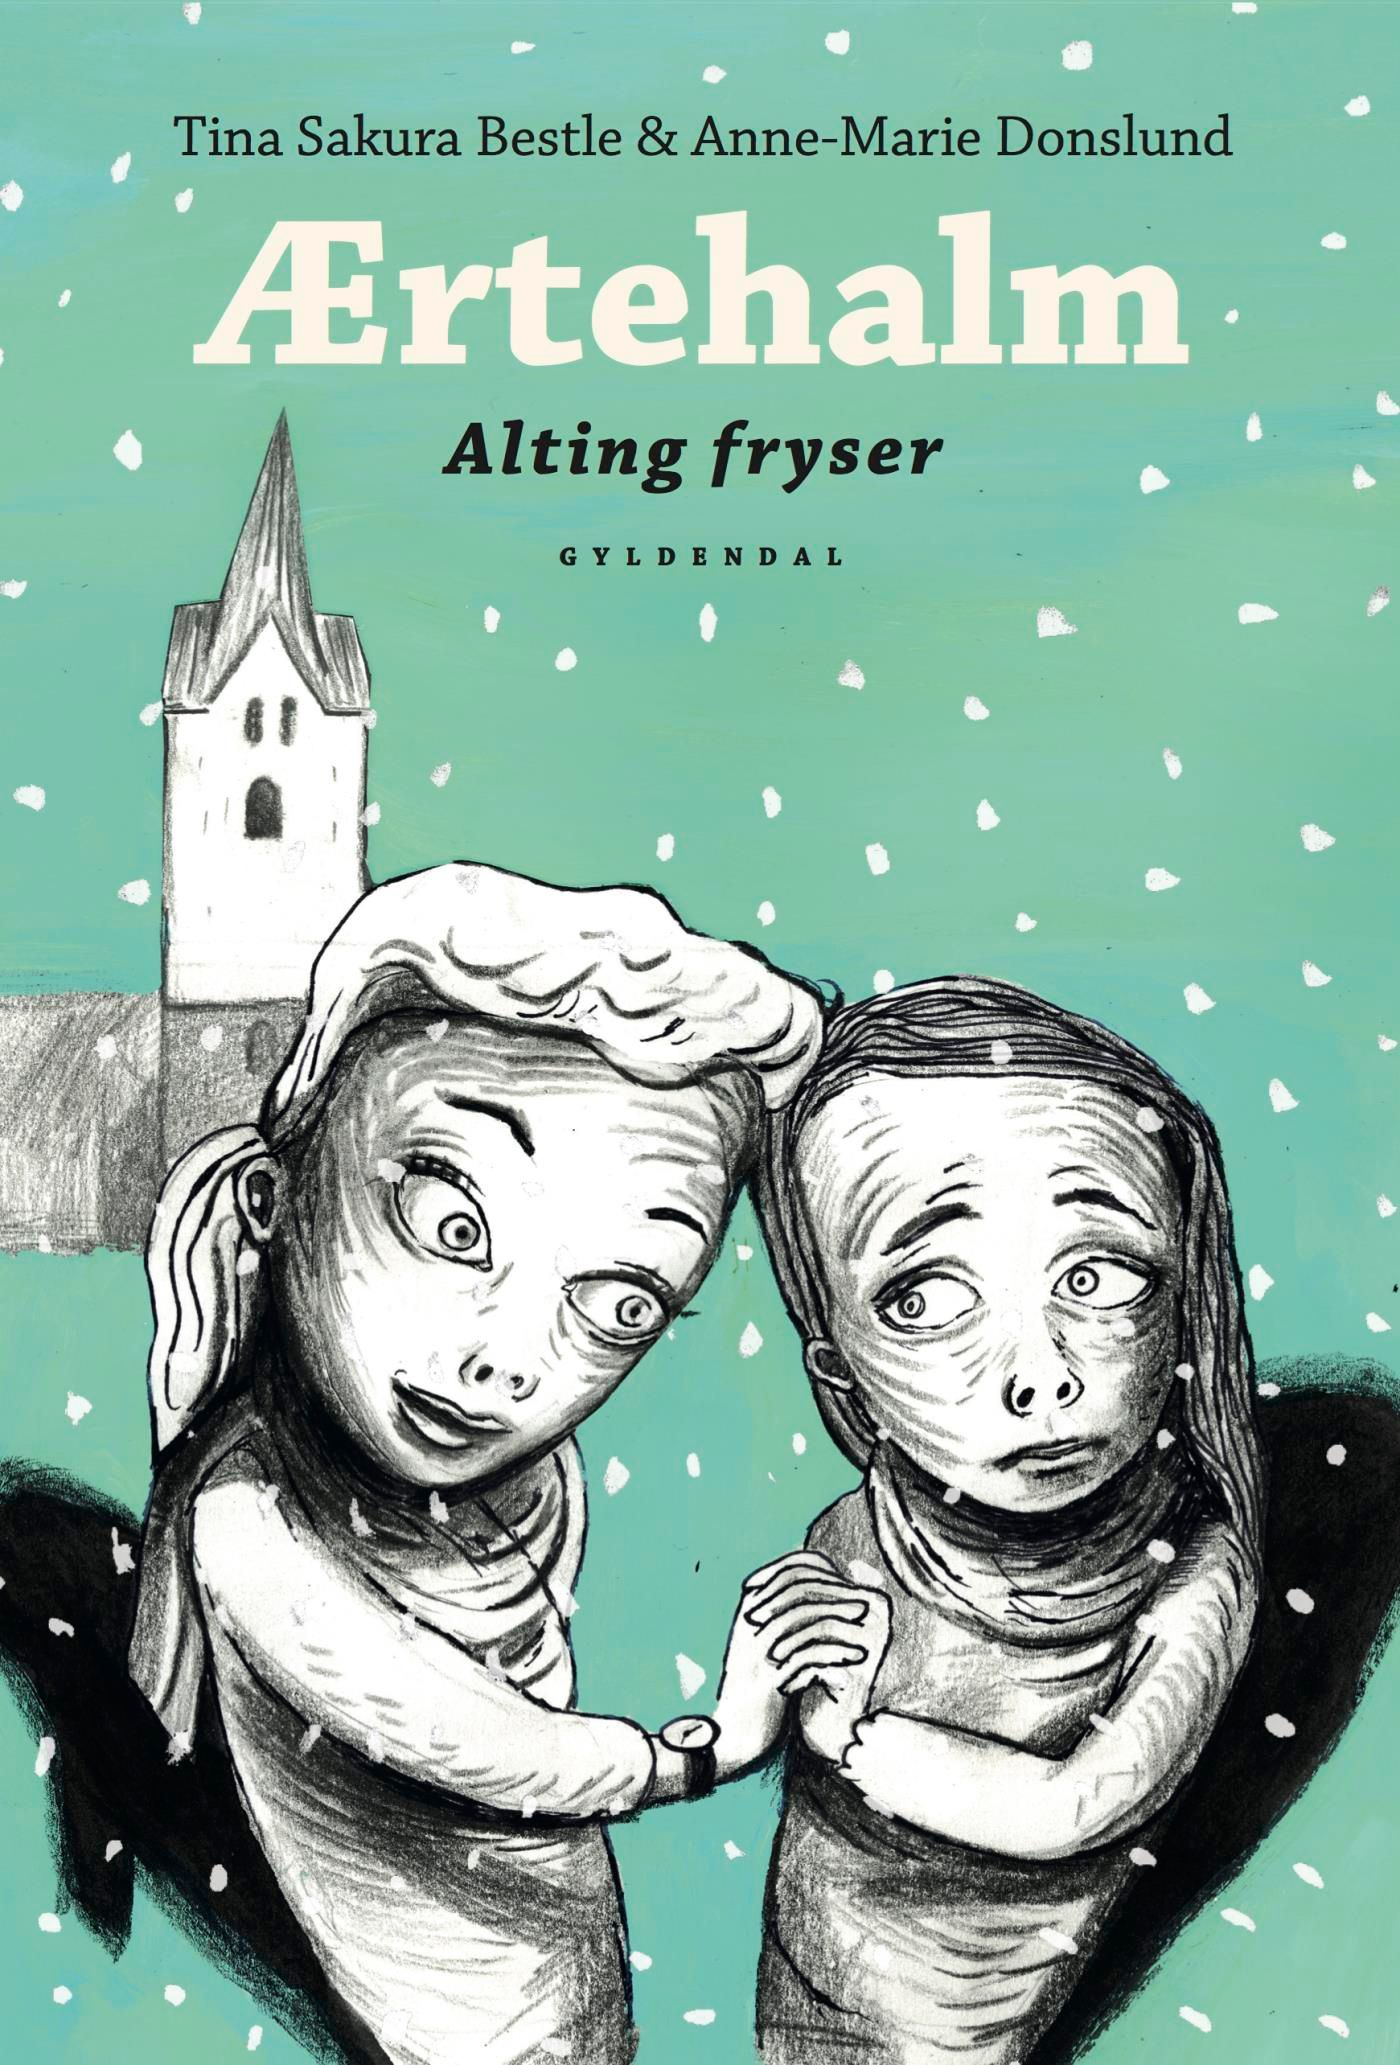 Ærtehalm 3 - Alting fryser, eBook by Anne-Marie Donslund, Tina Sakura Bestle